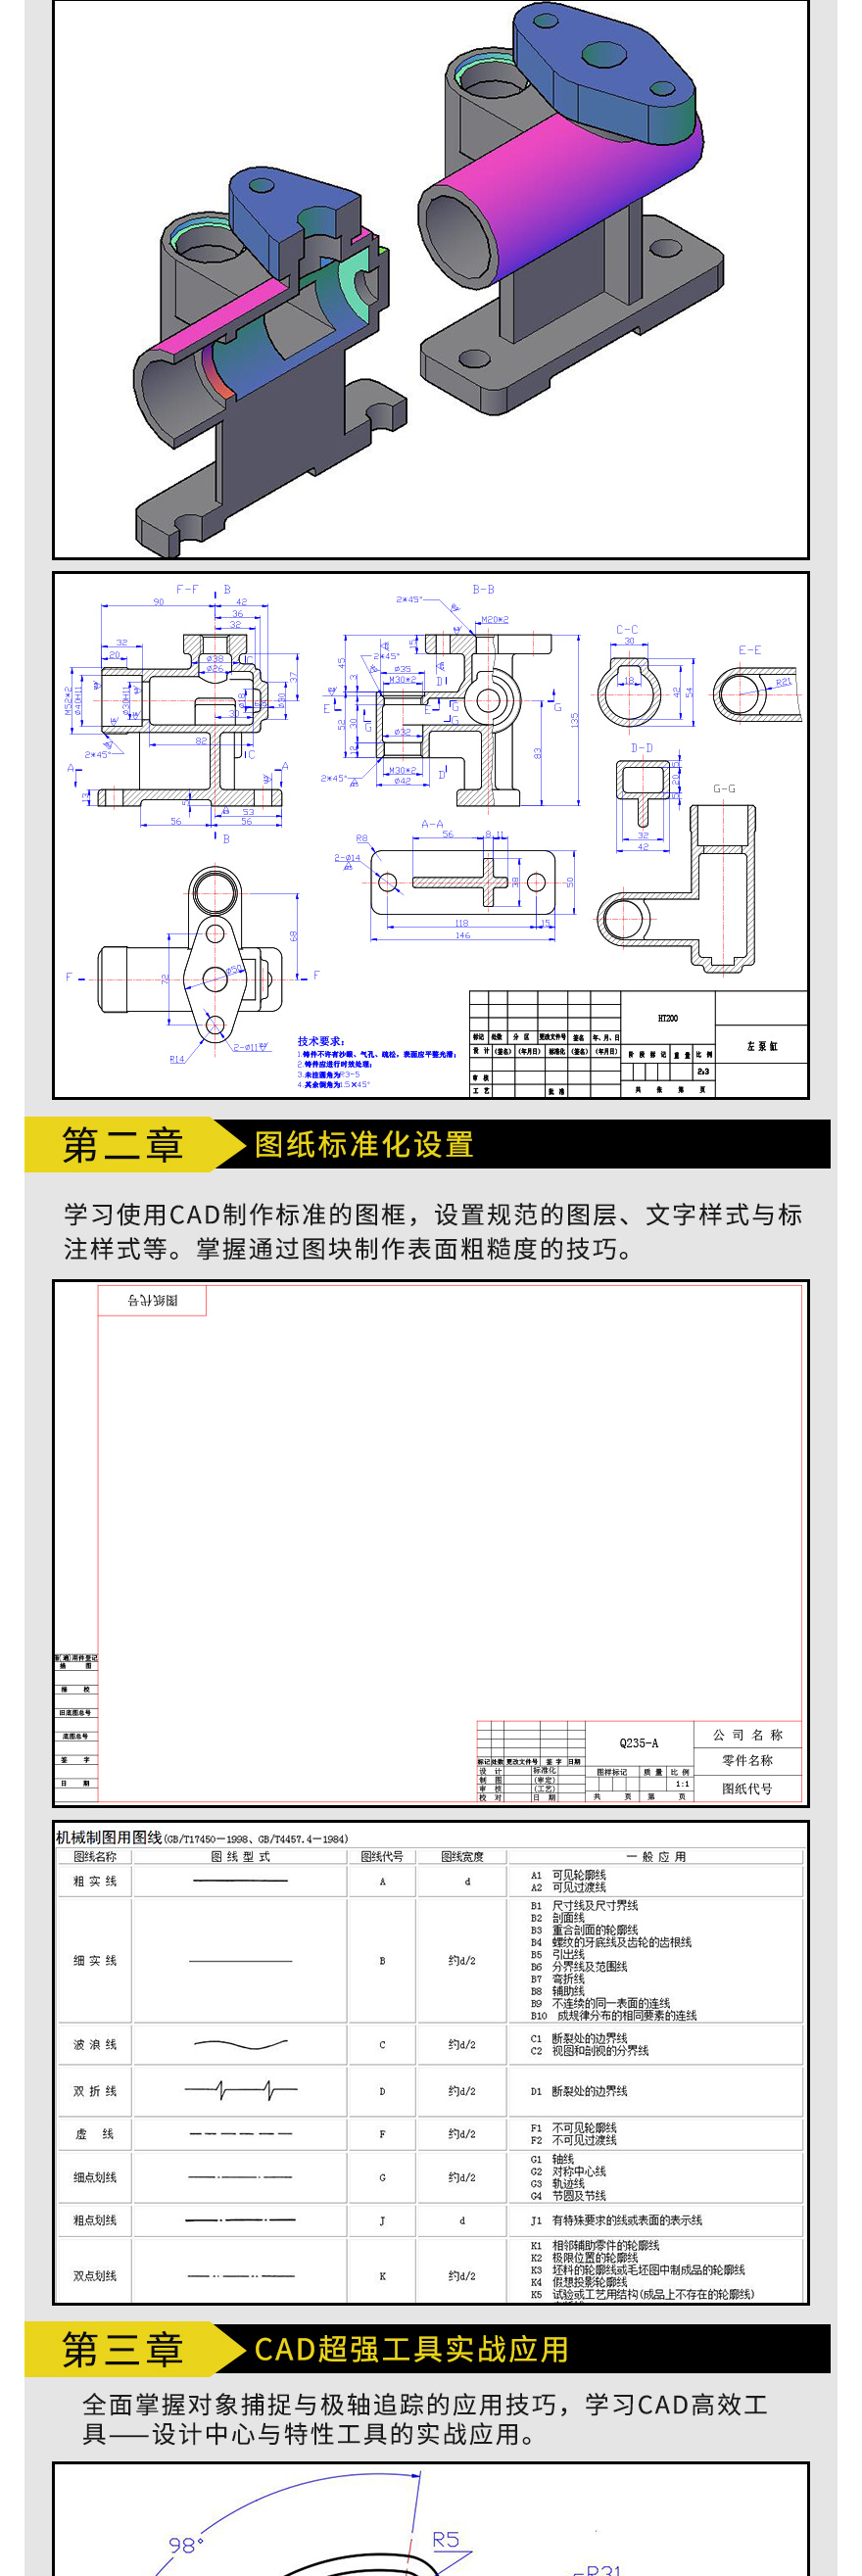 CAD机械制图高级课程-切片2_02.jpg